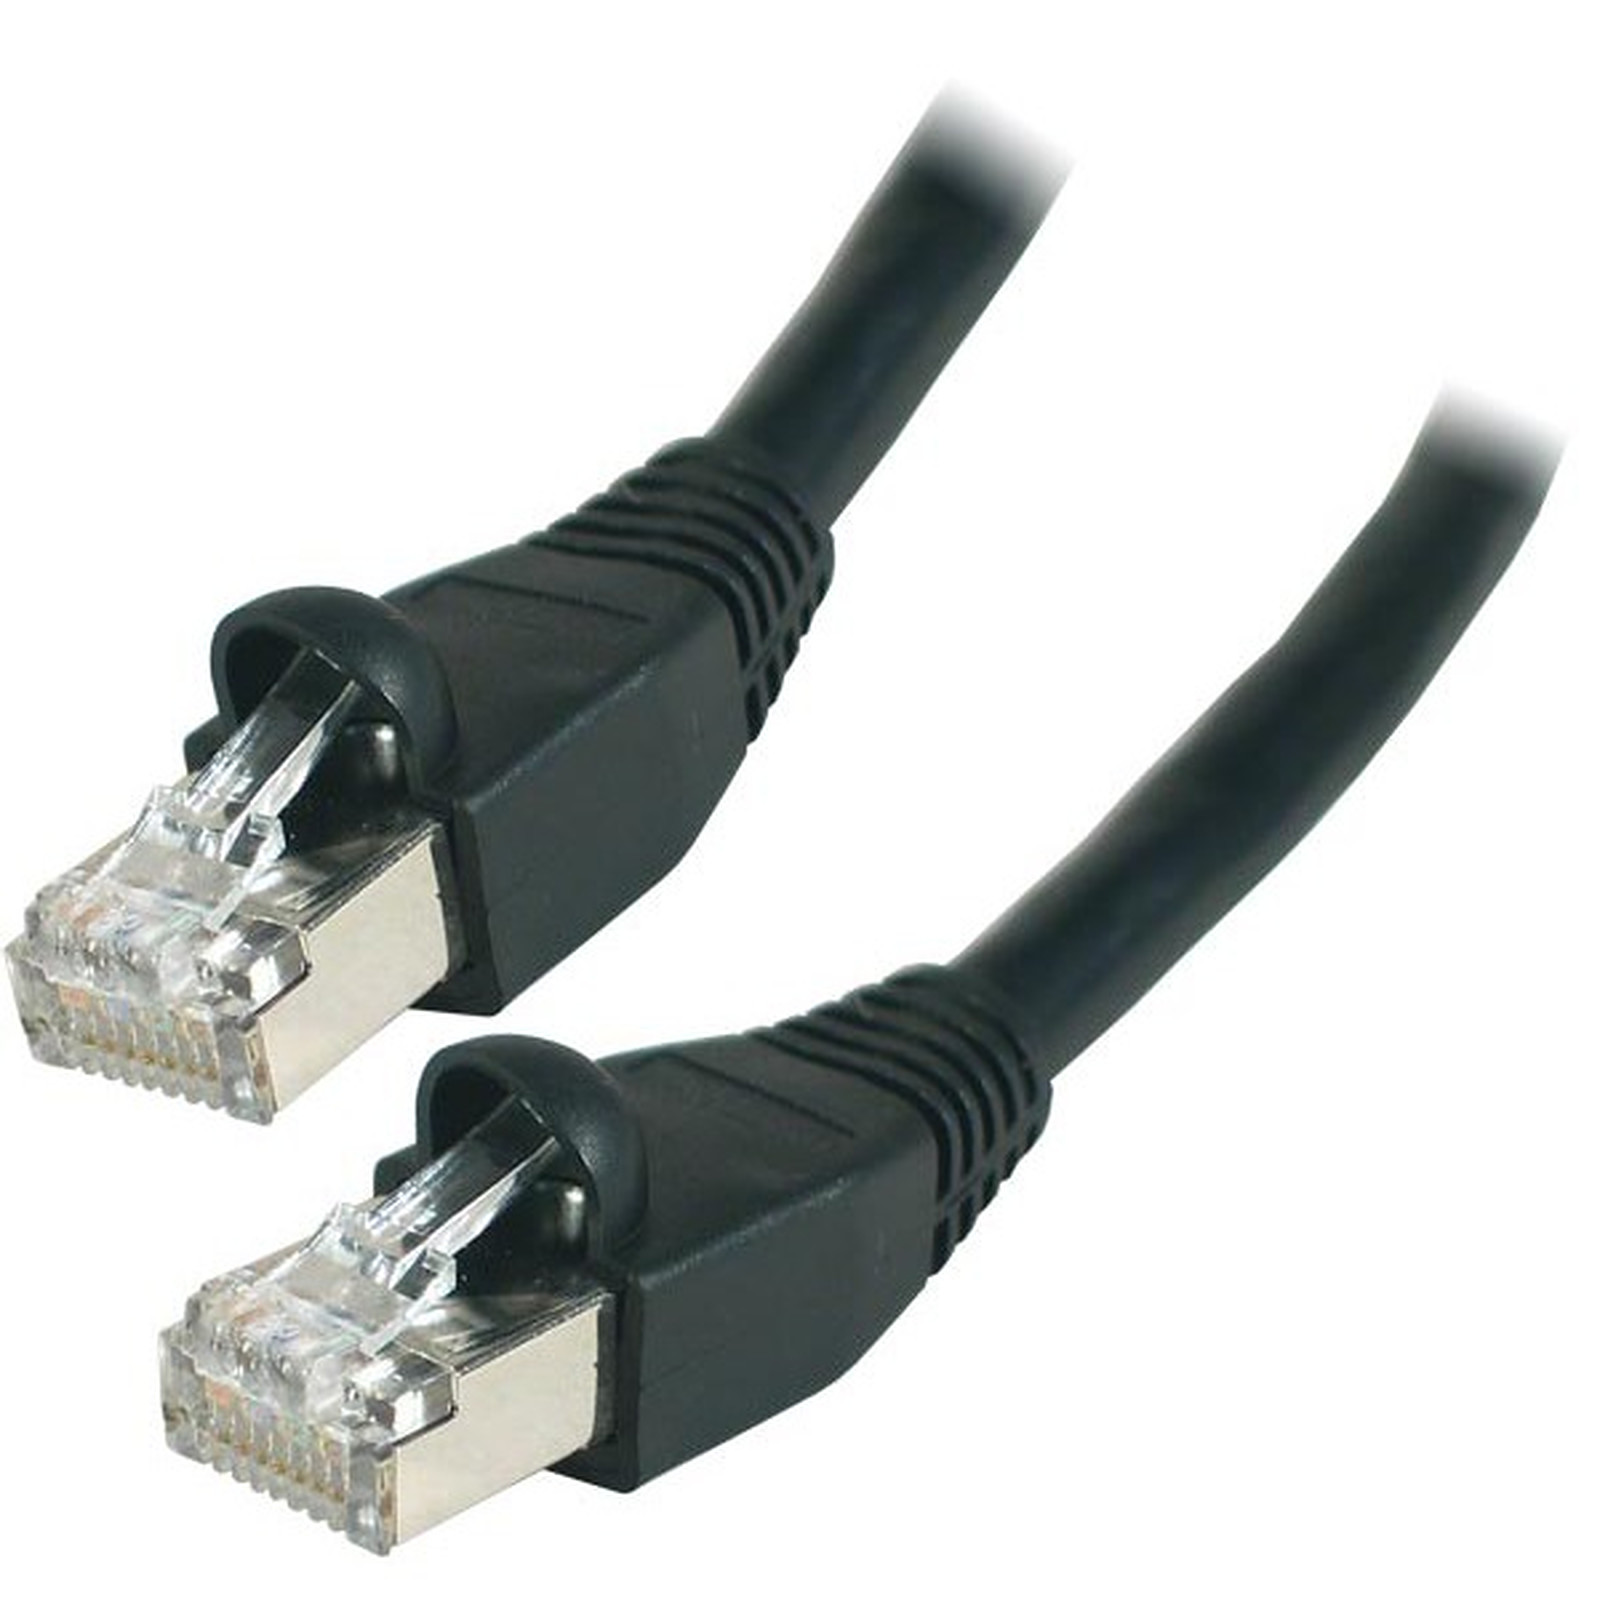 Cable RJ45 categorie 6 S/FTP 5 m (Noir) - Cable RJ45 Generique